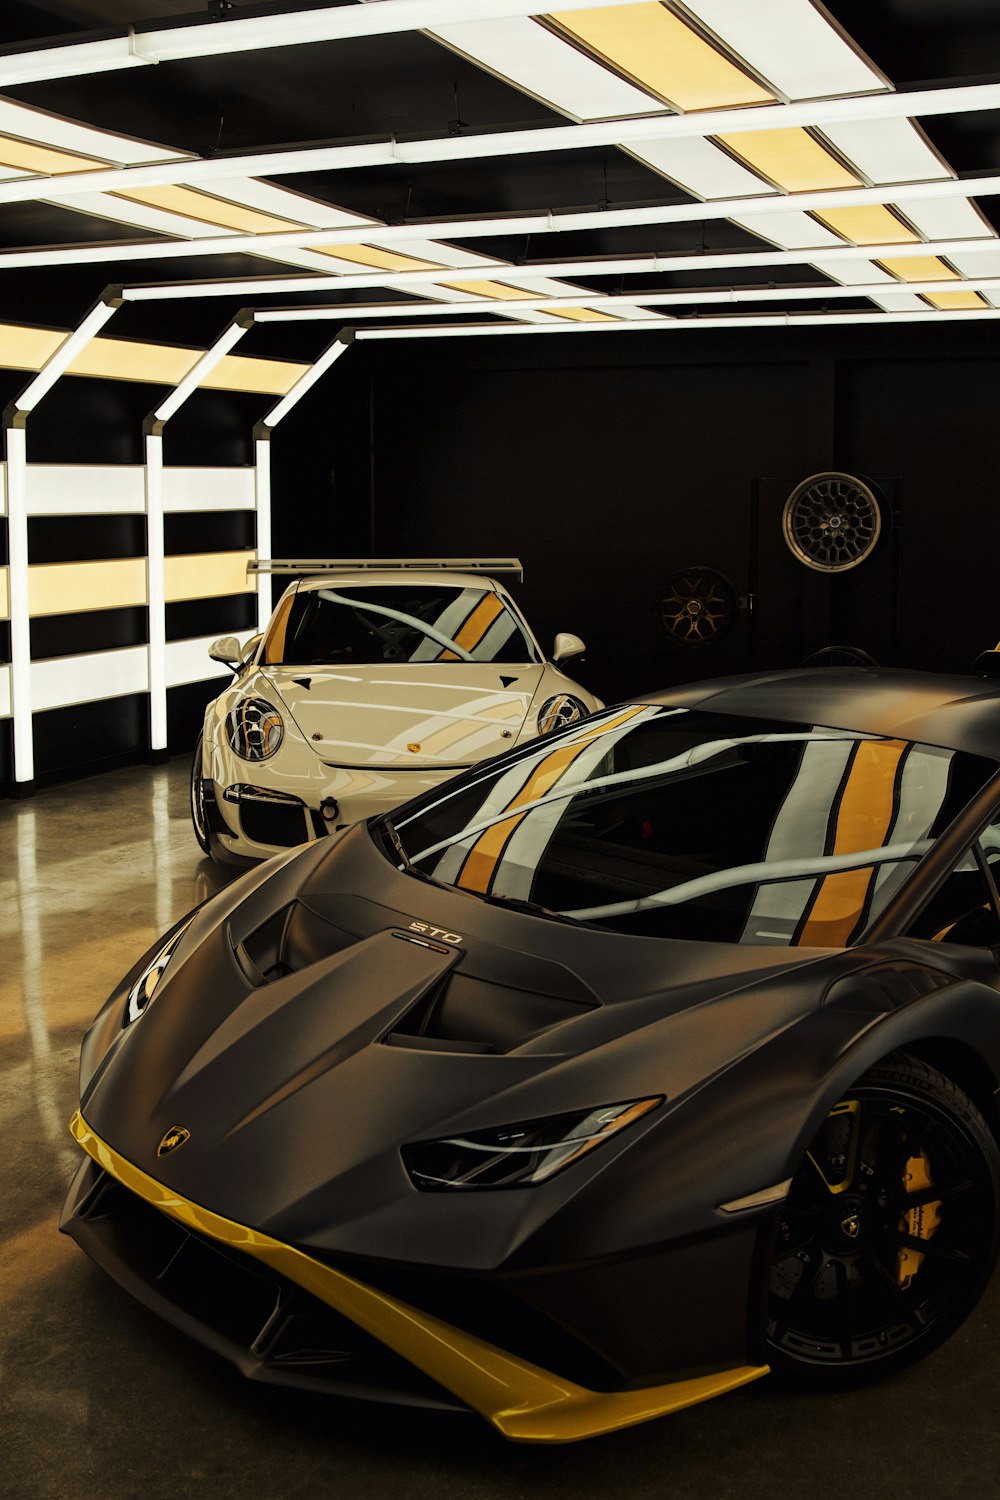 Une voiture de sport noire et jaune dans un garage